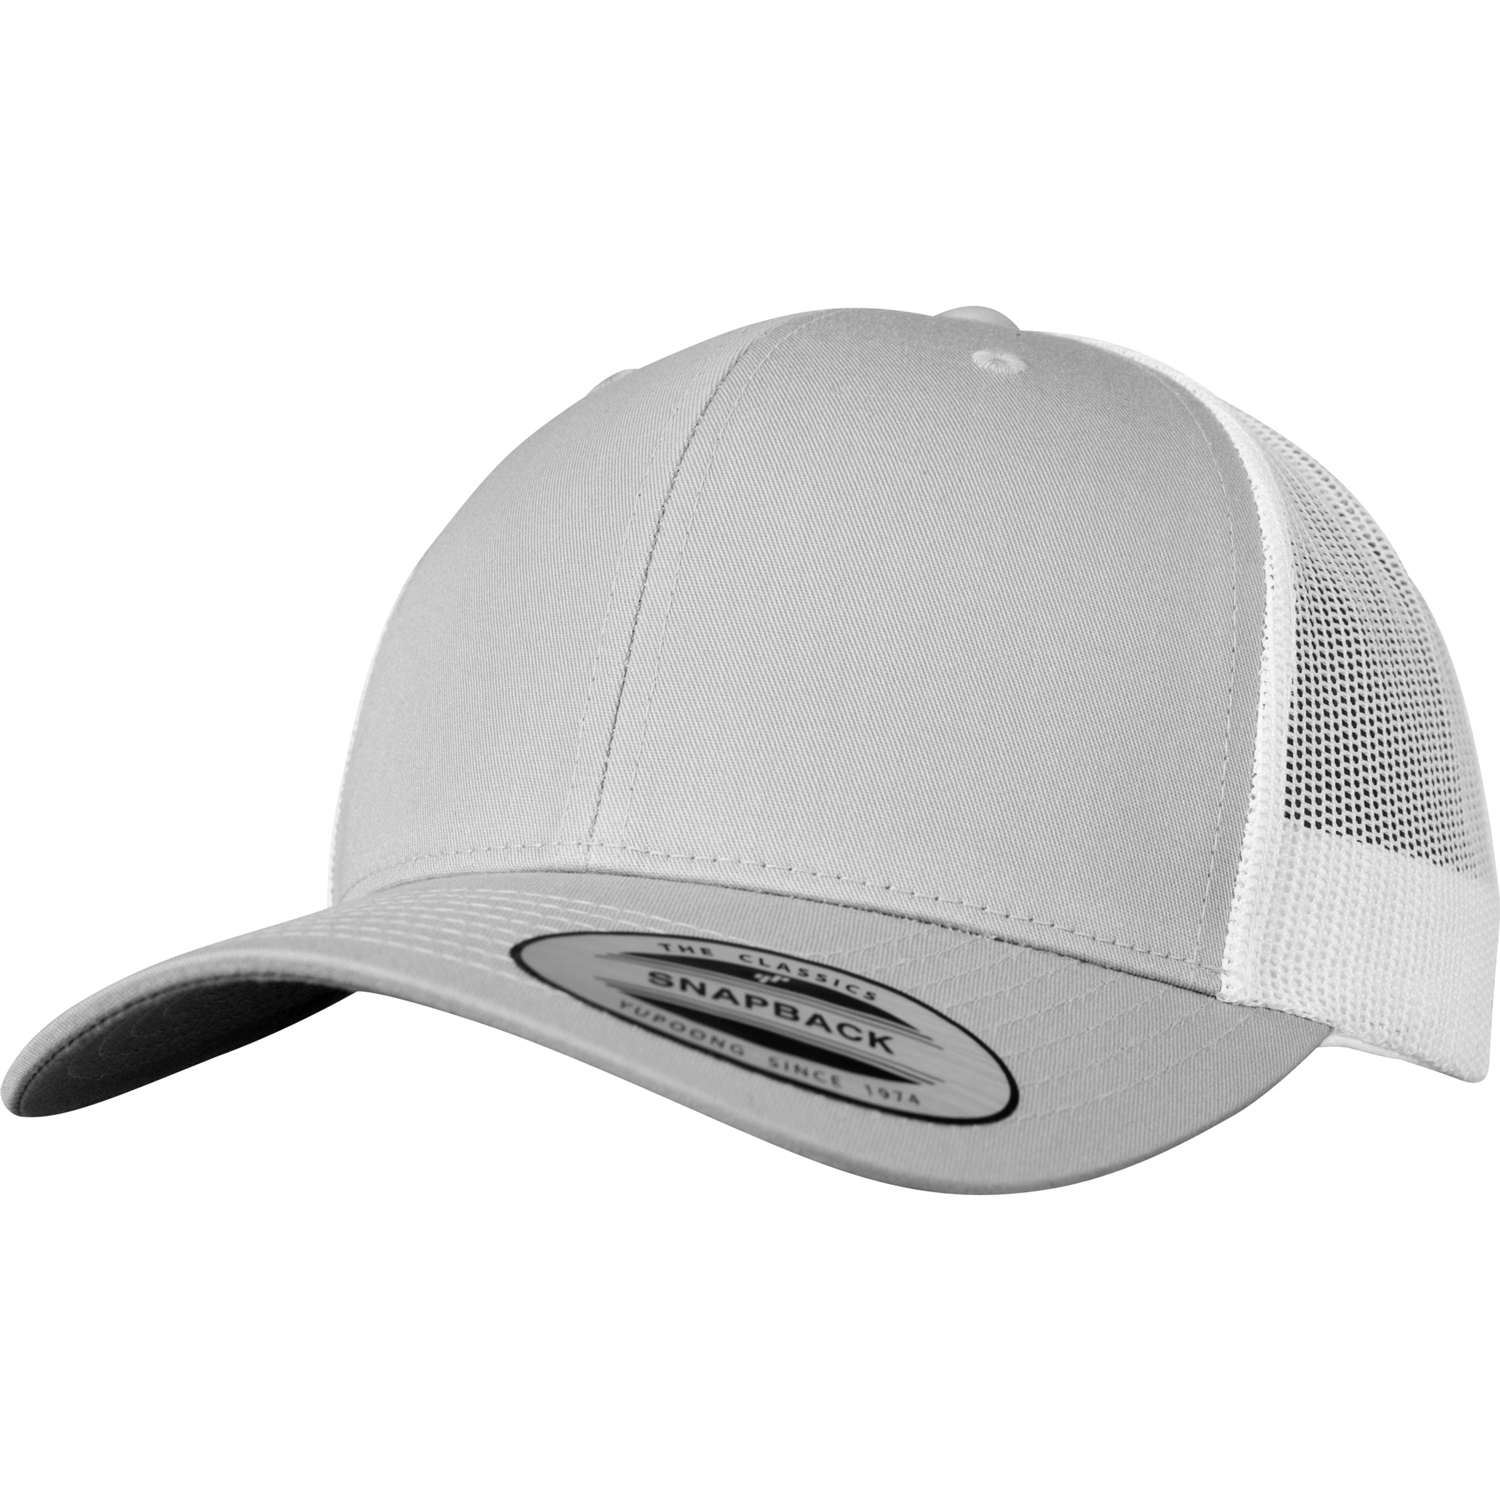 Trucker | GmbH Caps Caps/Hats Cap | Retro | Products MAPROM 2-Tone |